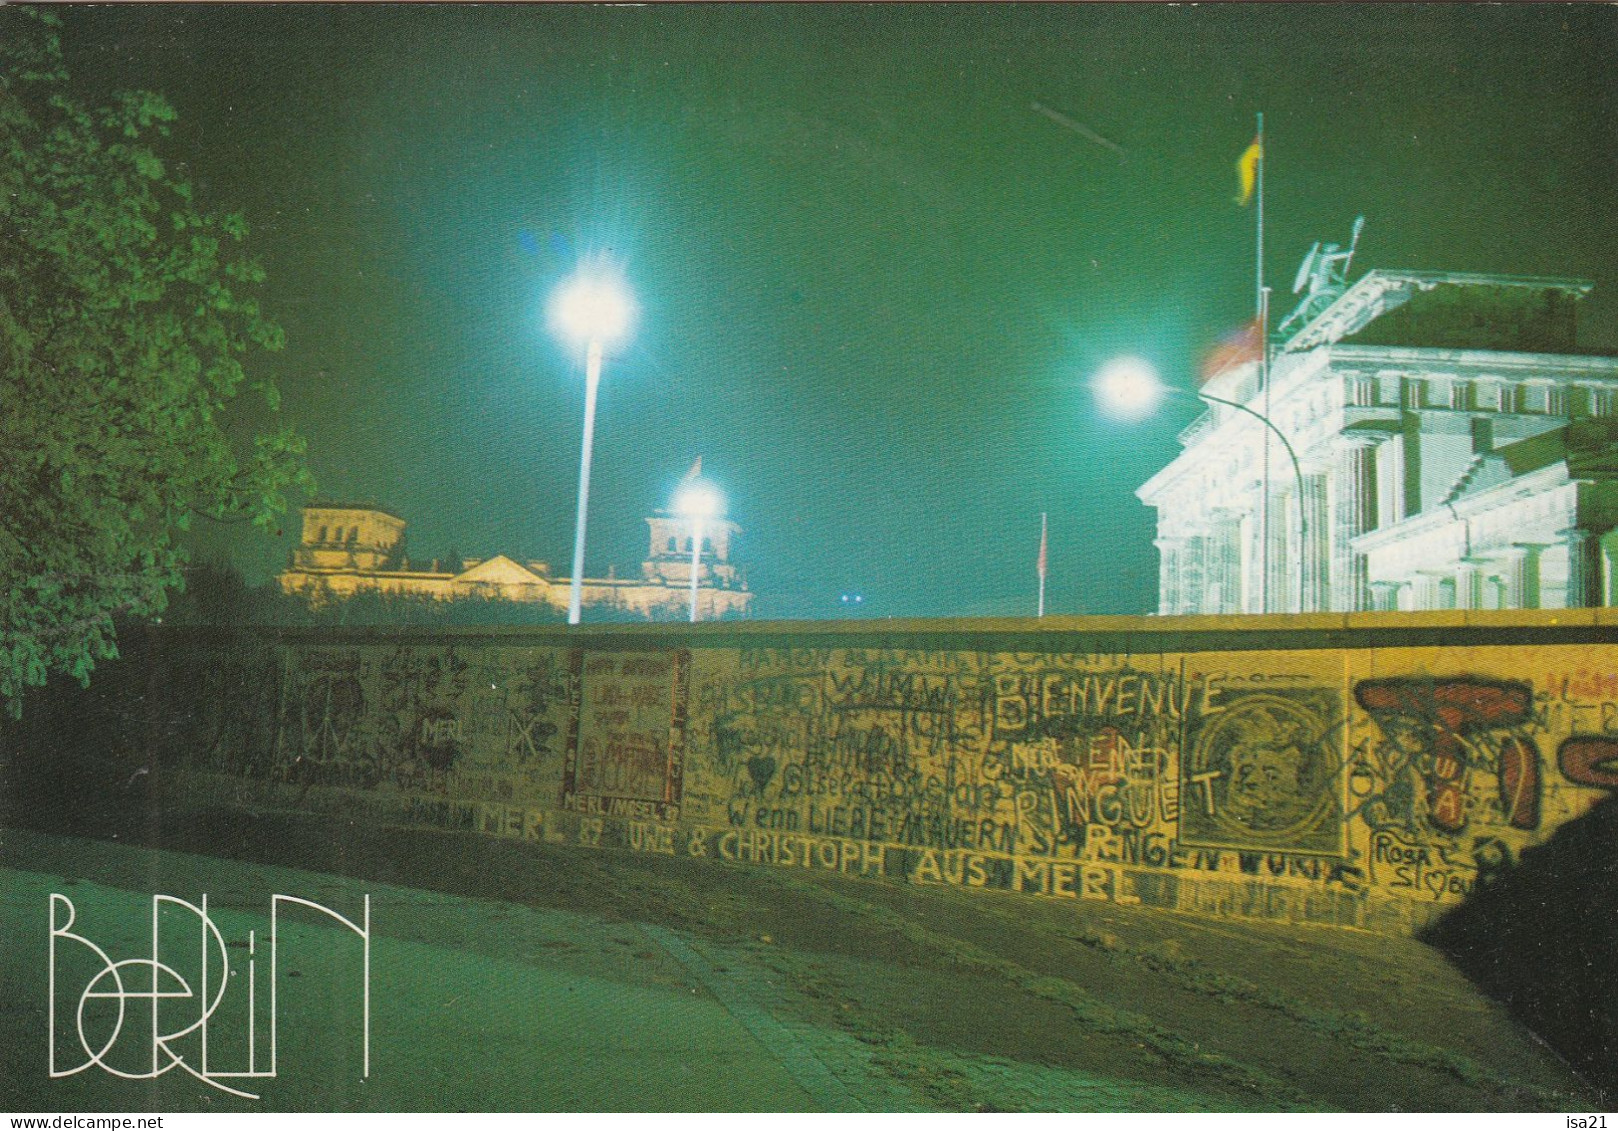 Carte Postale: DIE MAUER, Le Mur De Berlin. (2) - Berlin Wall